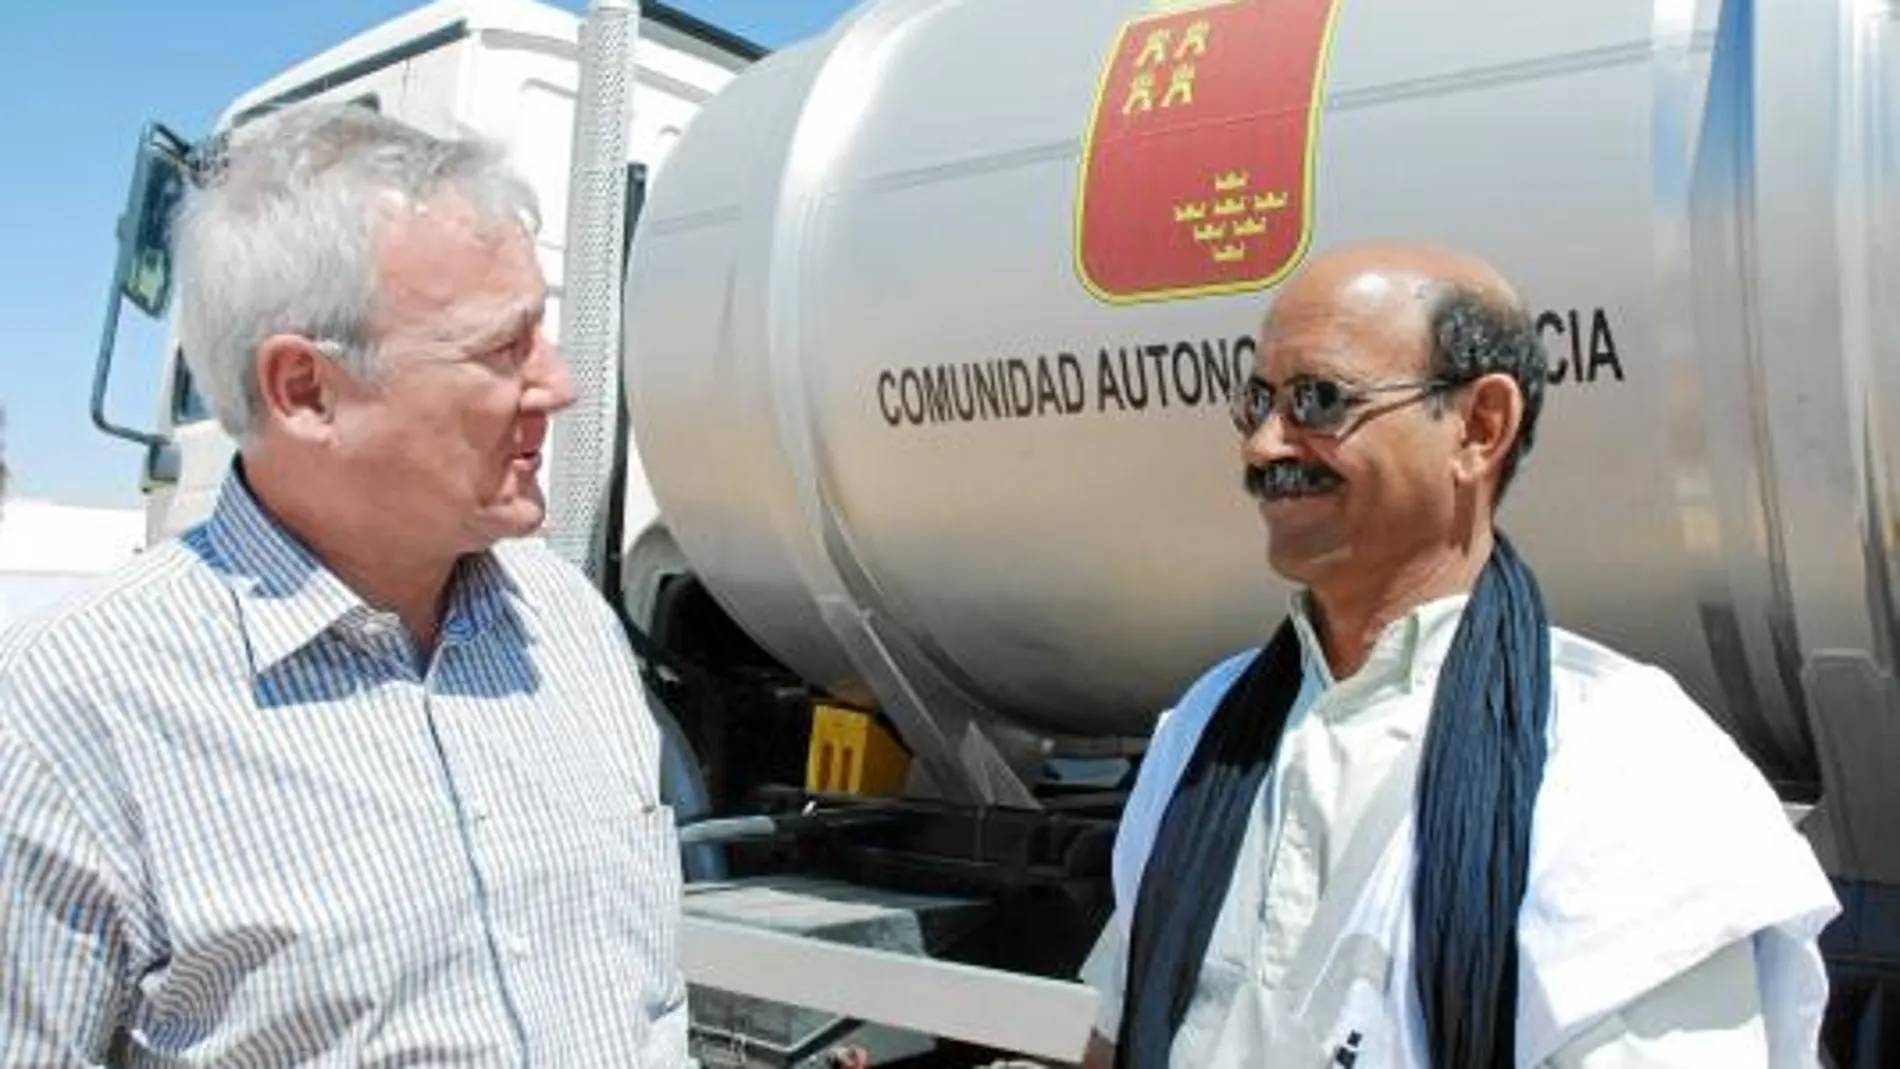 El presidente Valcárcel, junto al ministro de Cooperación saharaui, Salek Baba, durante su visita a la potabilizadora